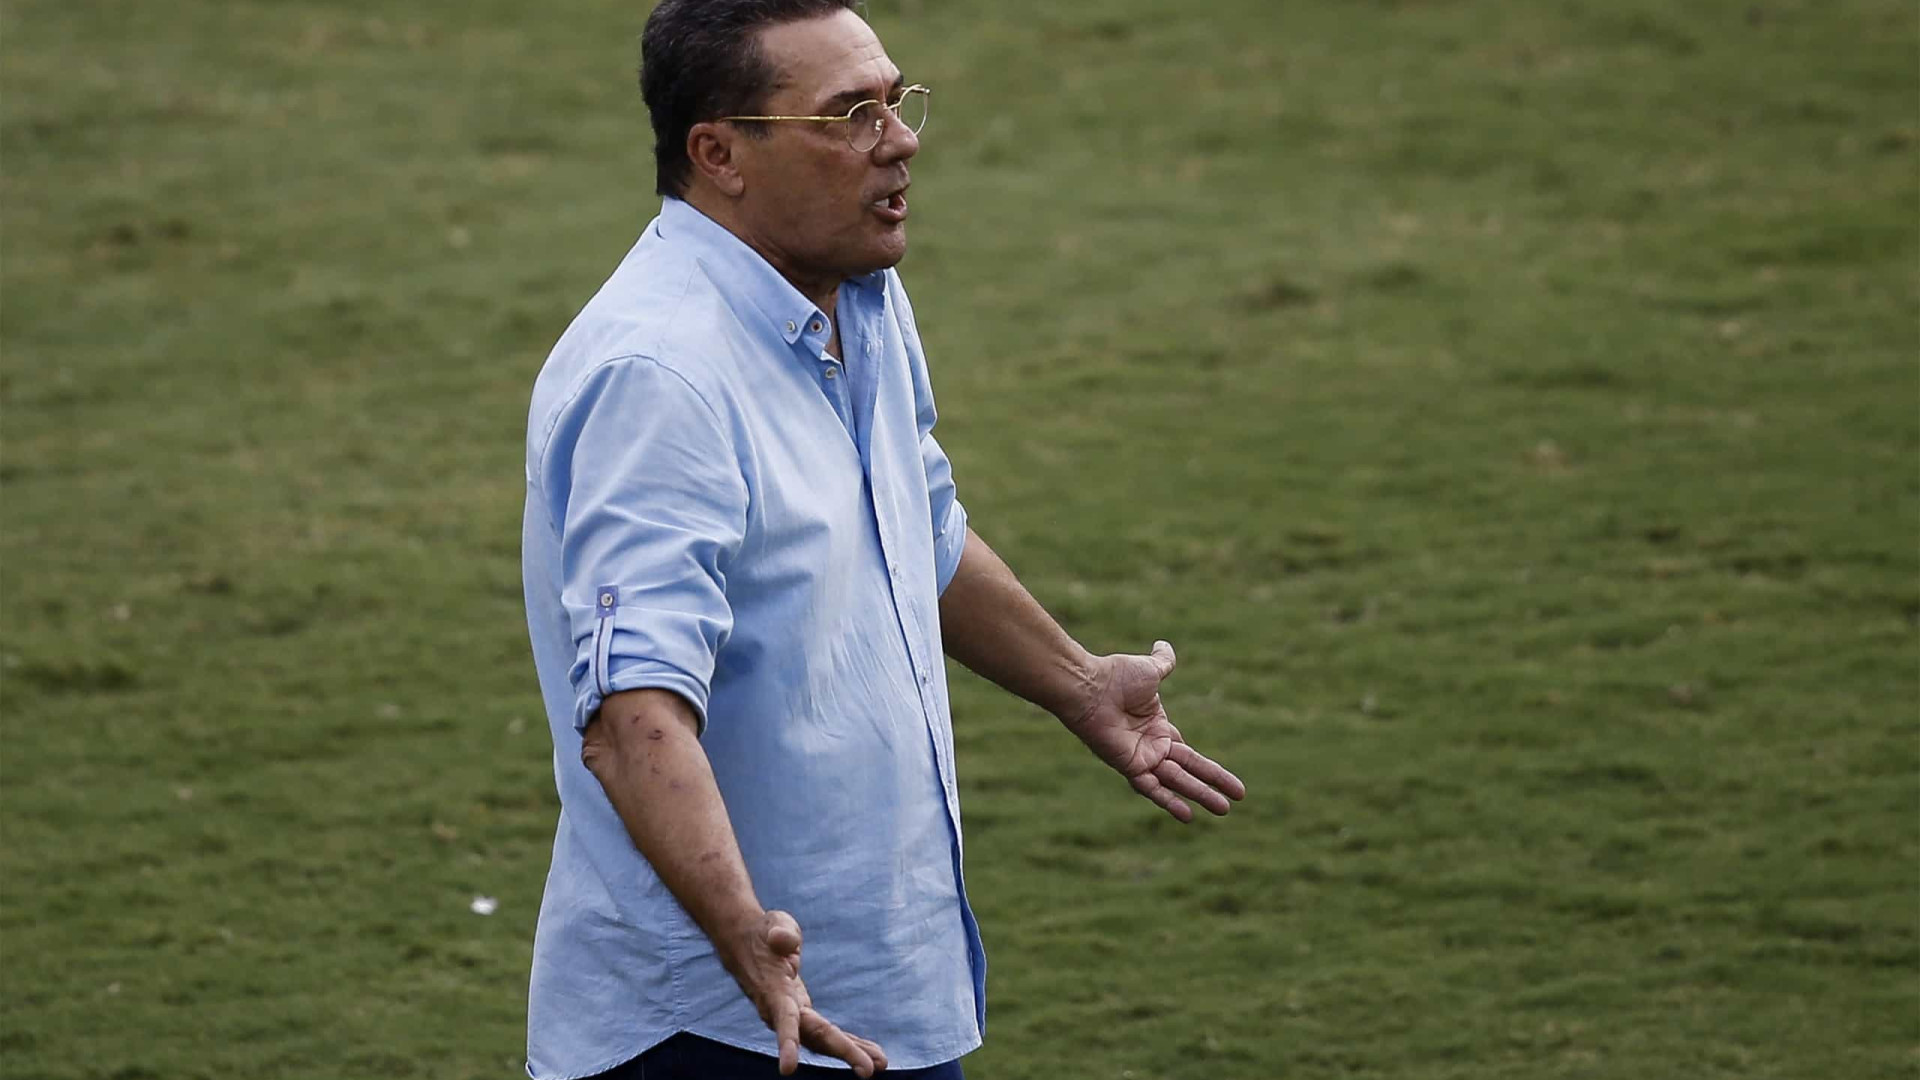 Vetado no Santos e traído na política, Luxa quer futebol de volta às origens